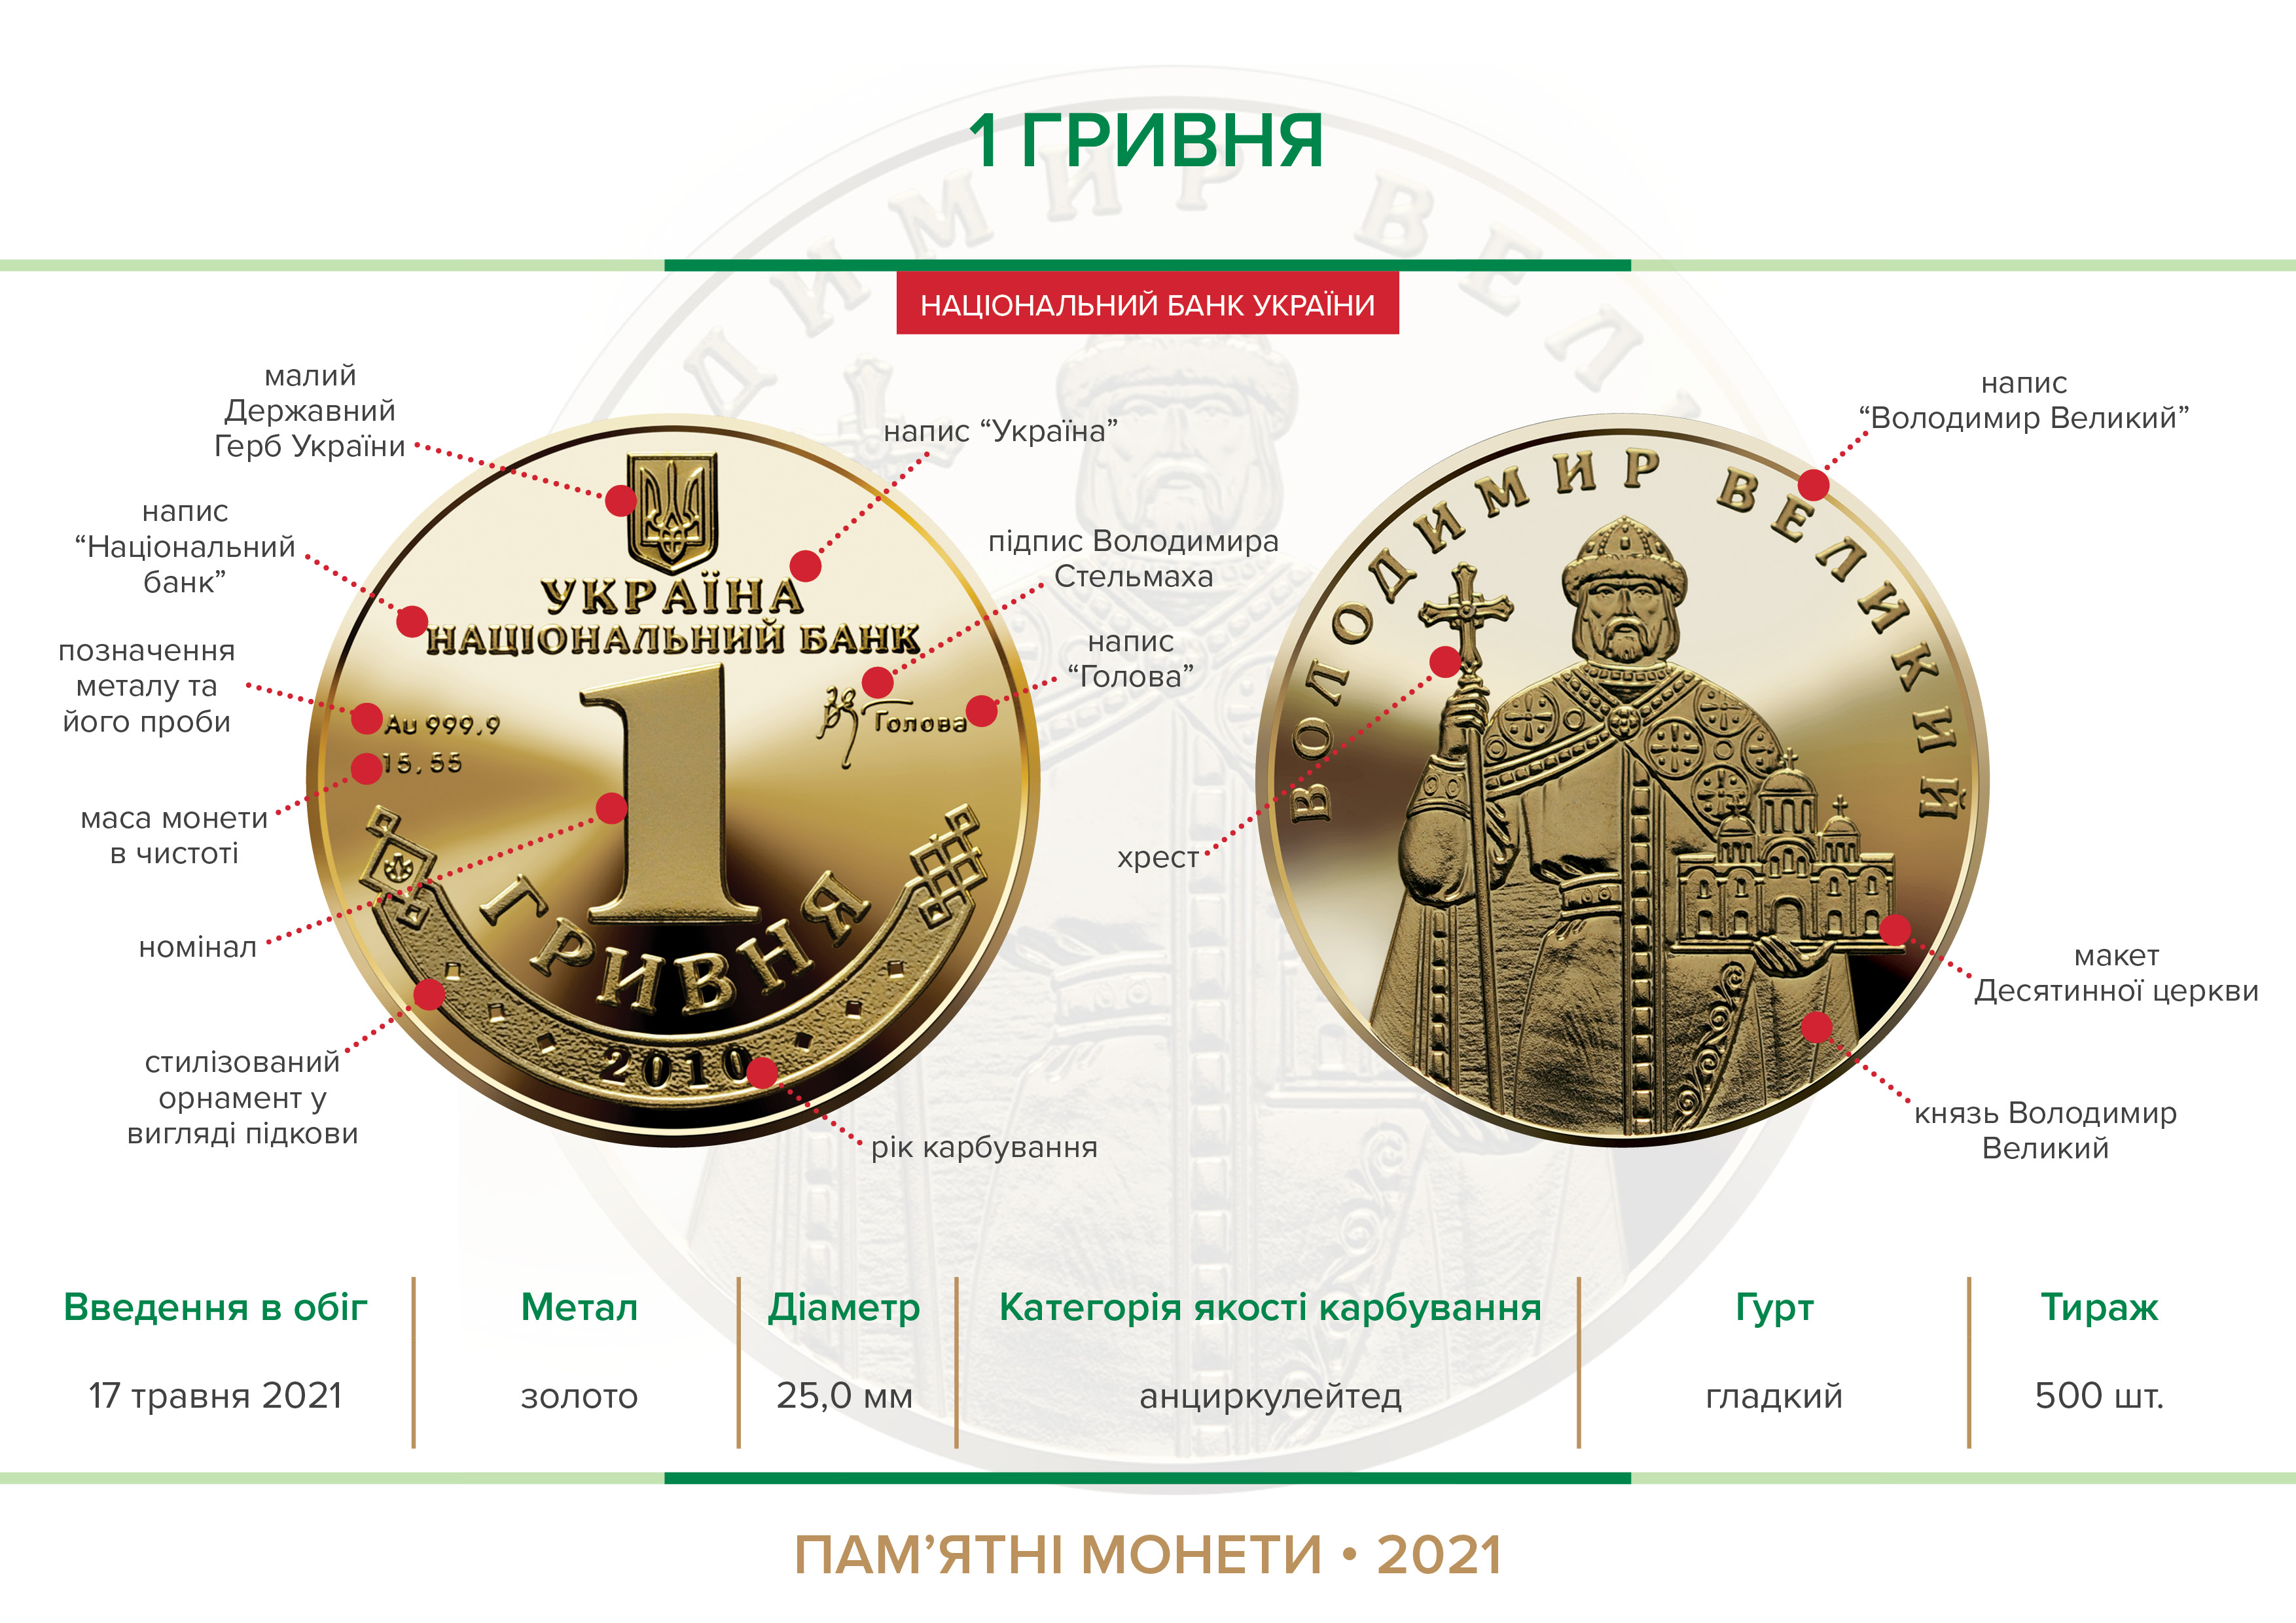 Наступний аукціон з продажу пам’ятної монети "1 Гривня" відбудеться 10 червня 2021 року